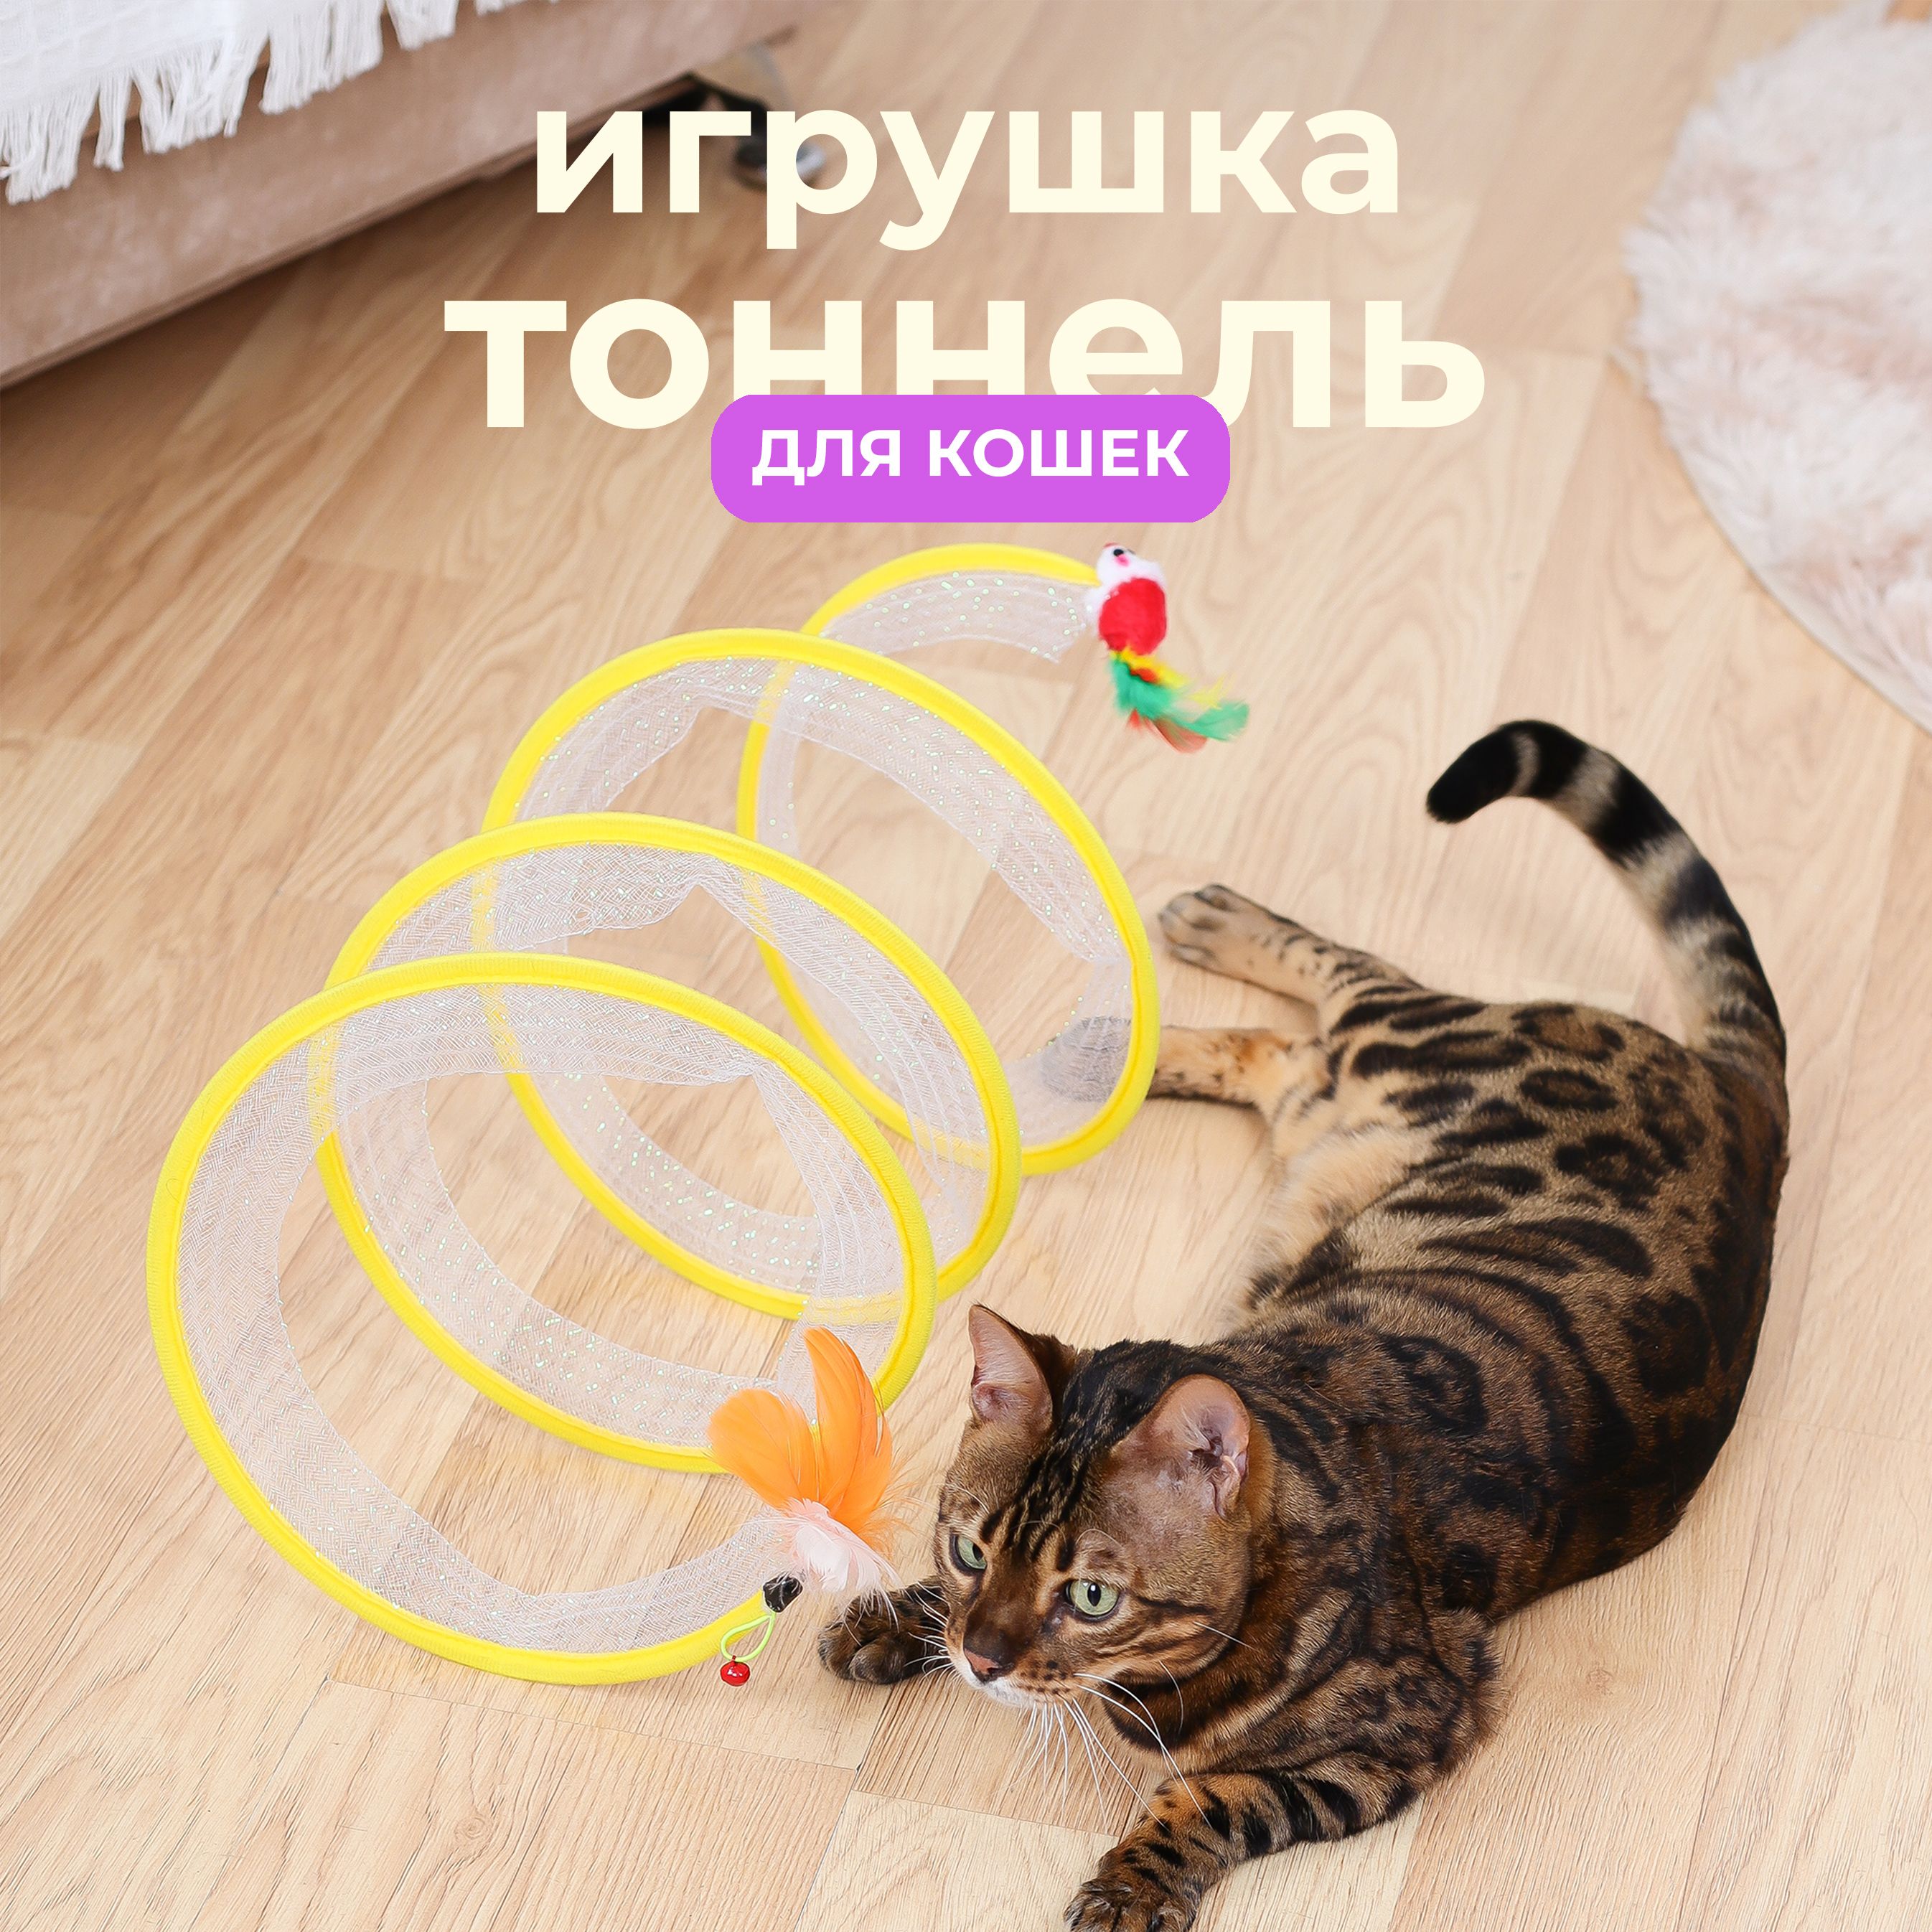 Как выбрать игрушки для кошек